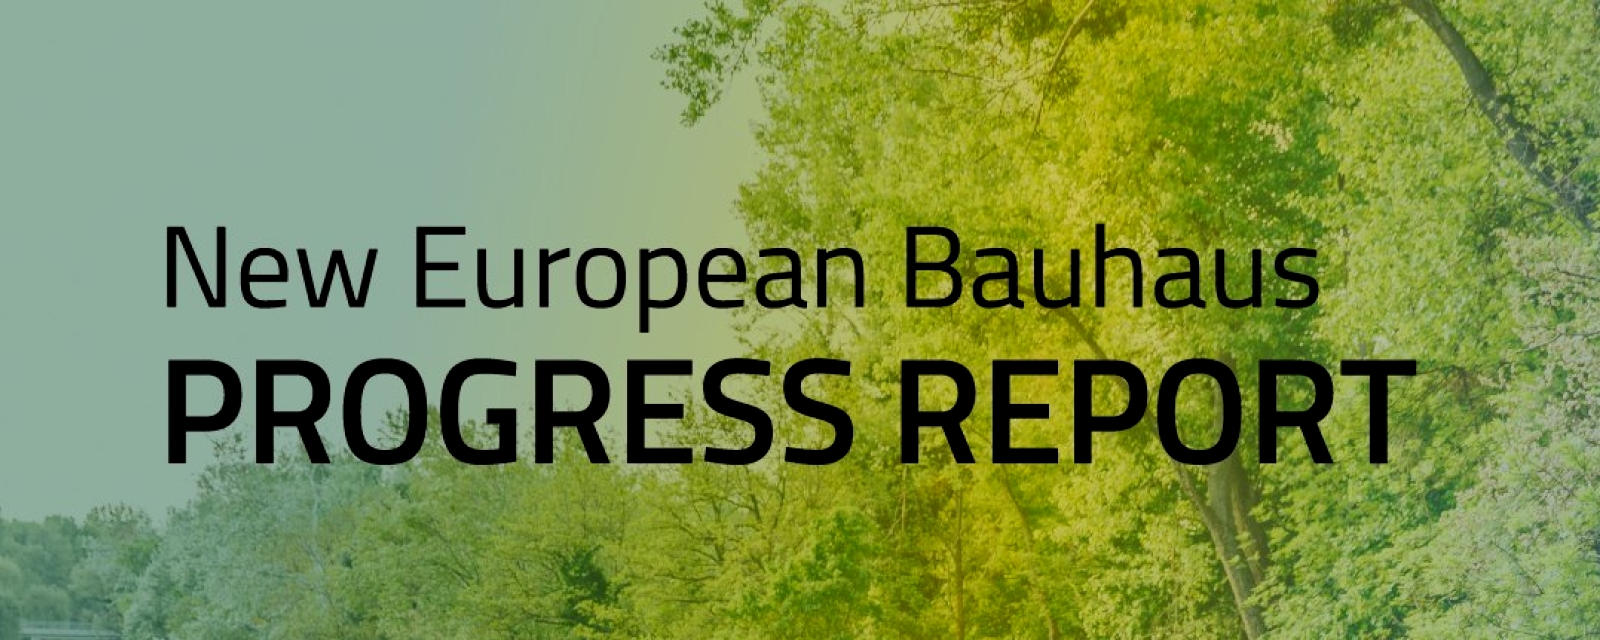 Rapport nouveau Bauhaus européen